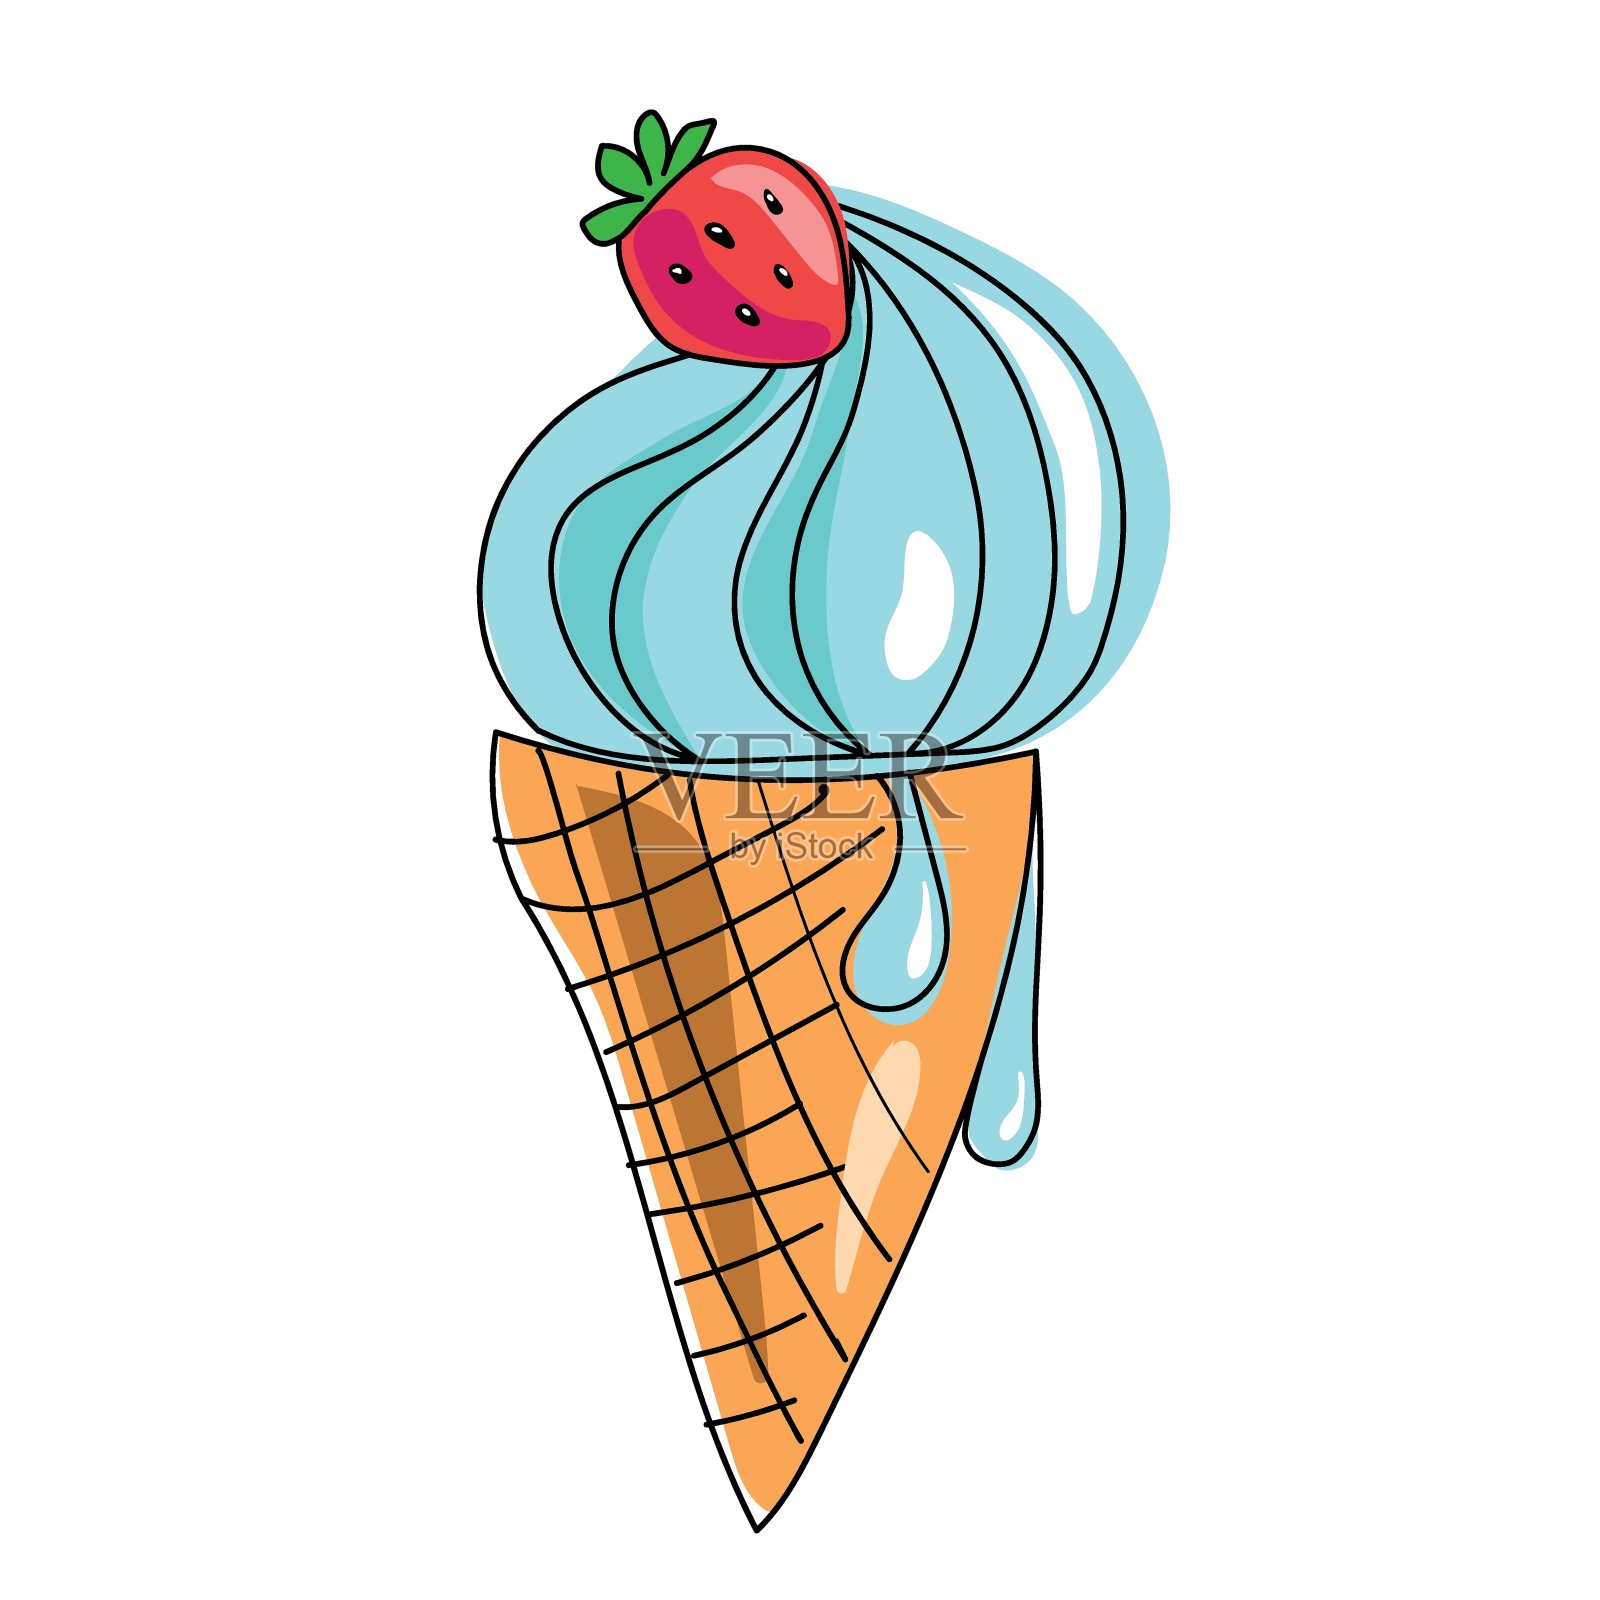 韩国华夫饼干冰淇淋 - 华夫饼干和自制冰淇淋中的托阿payoh食品中心！必威一betway - betway必威西盟体育,必威手机版必威手机版